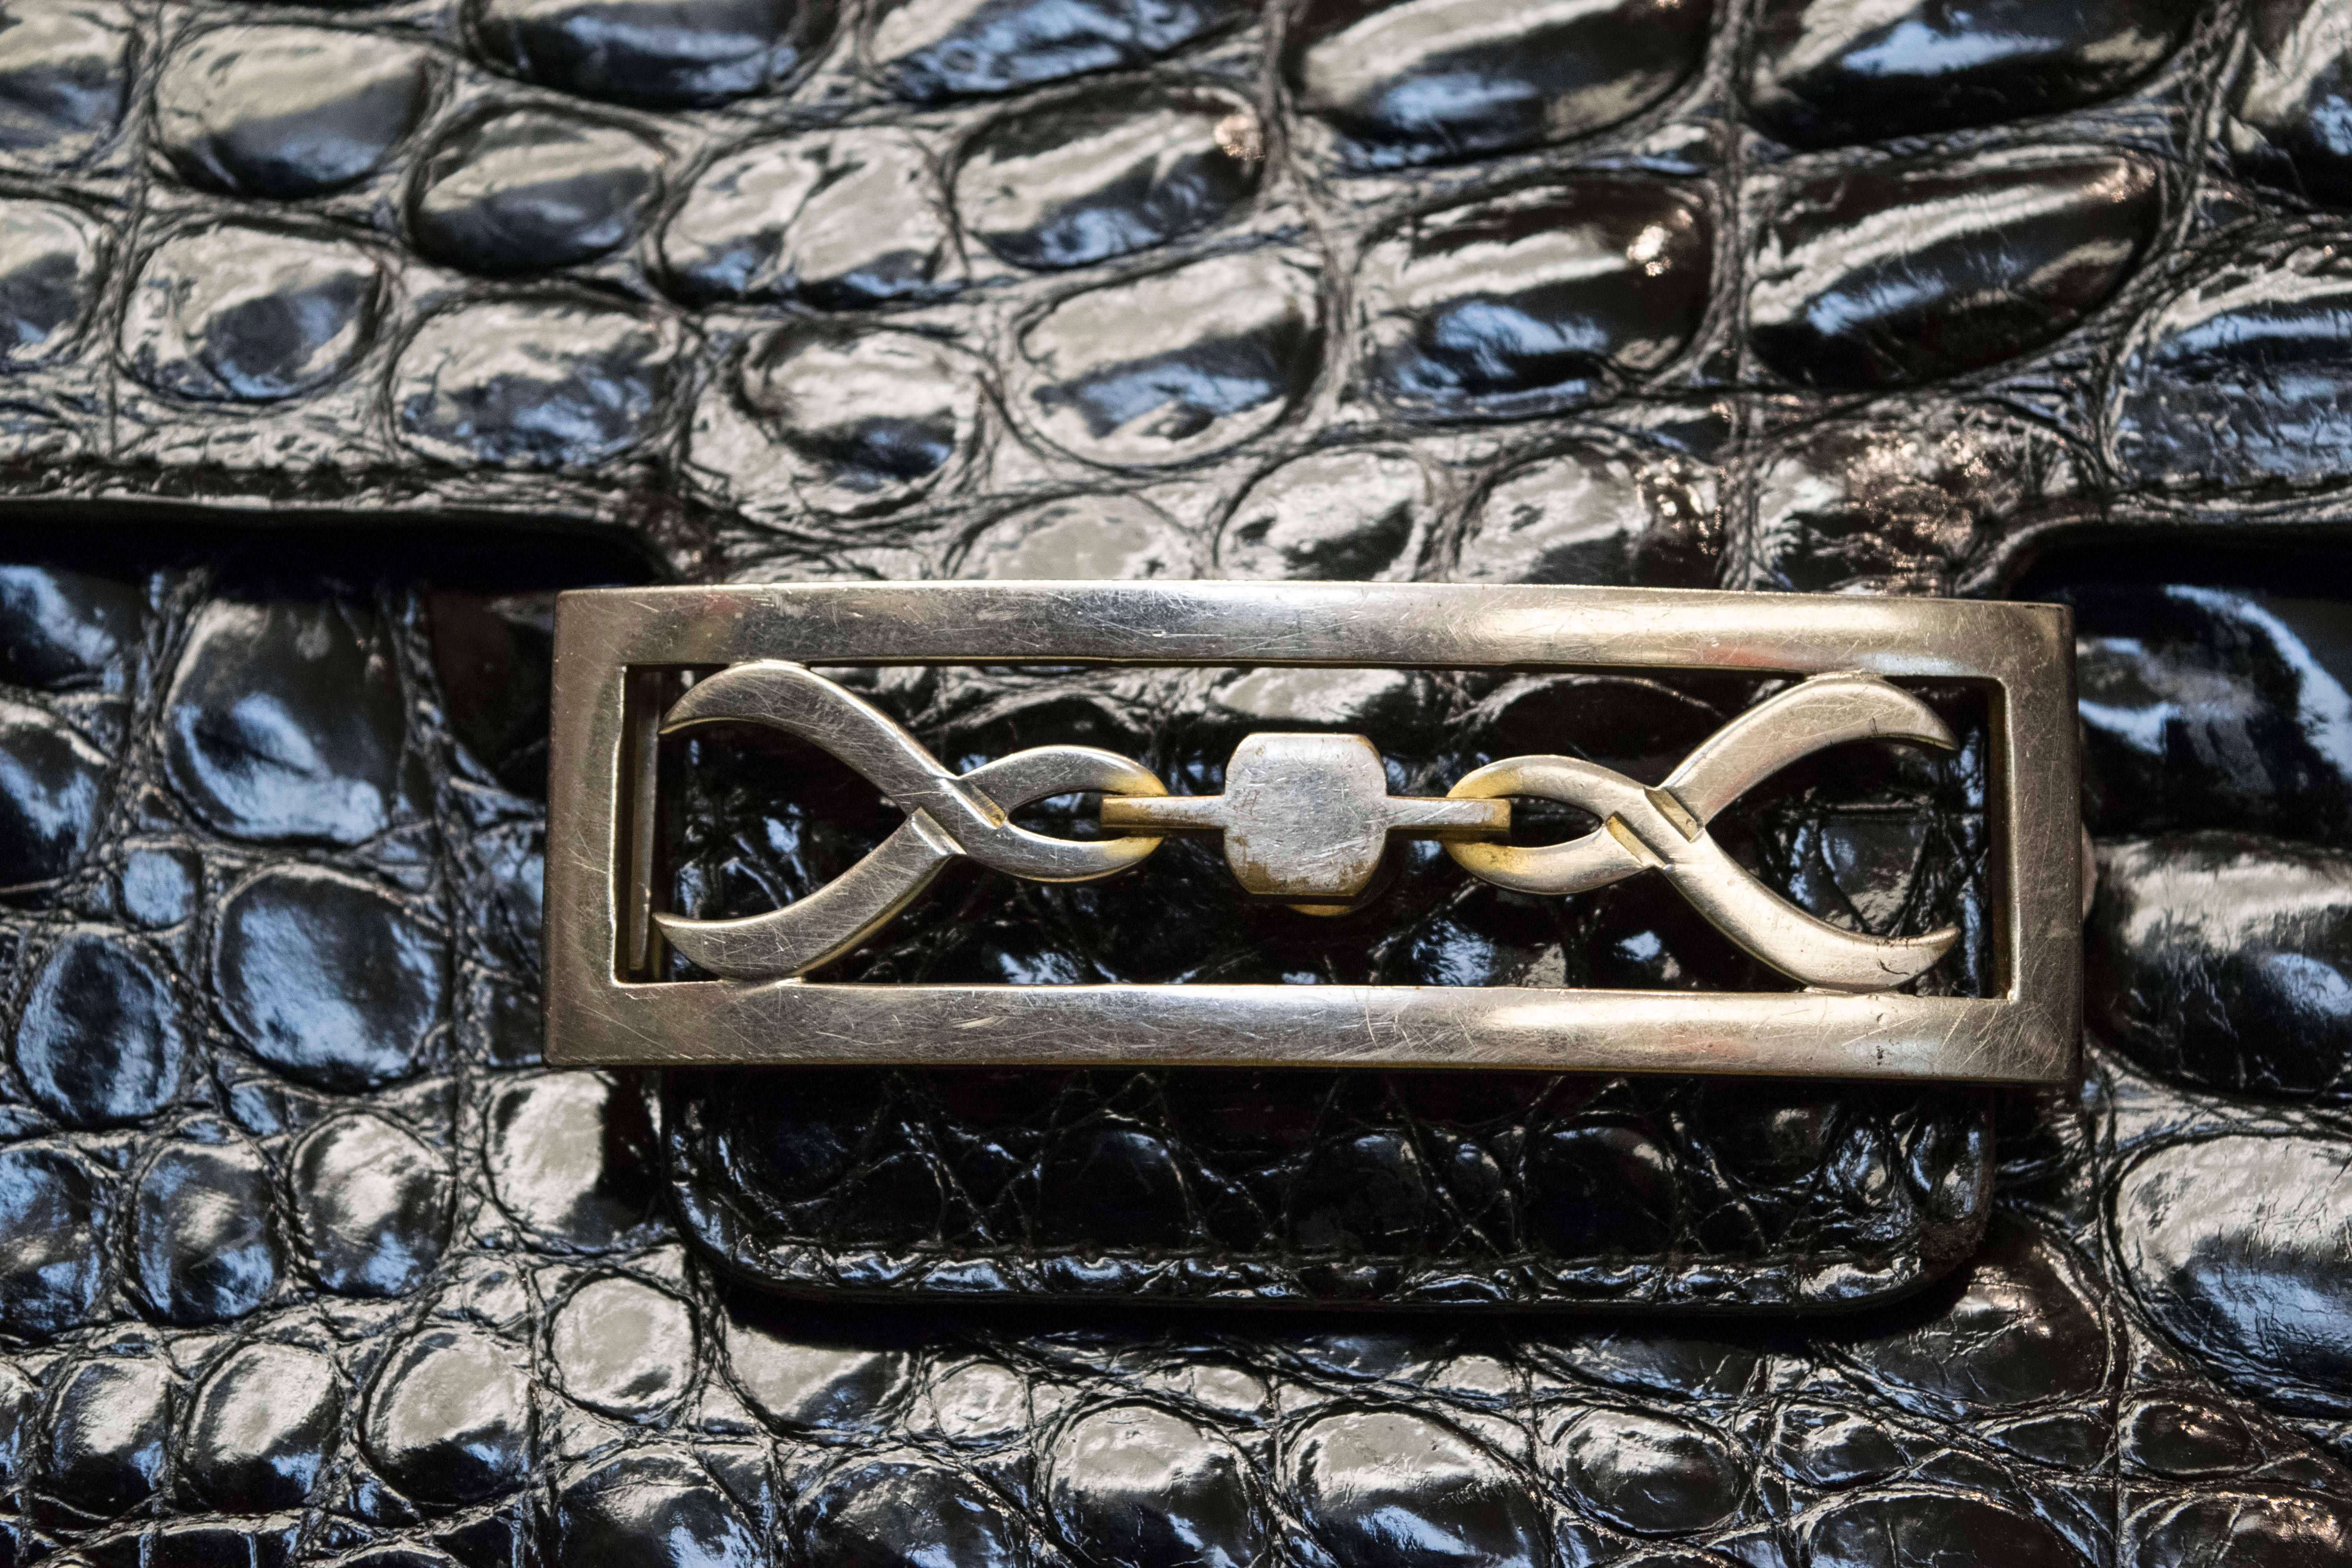 sac à main en alligator noir des années 1940

Légère ternissure sur le travail du métal.

L 12
H 9 
D 4.5